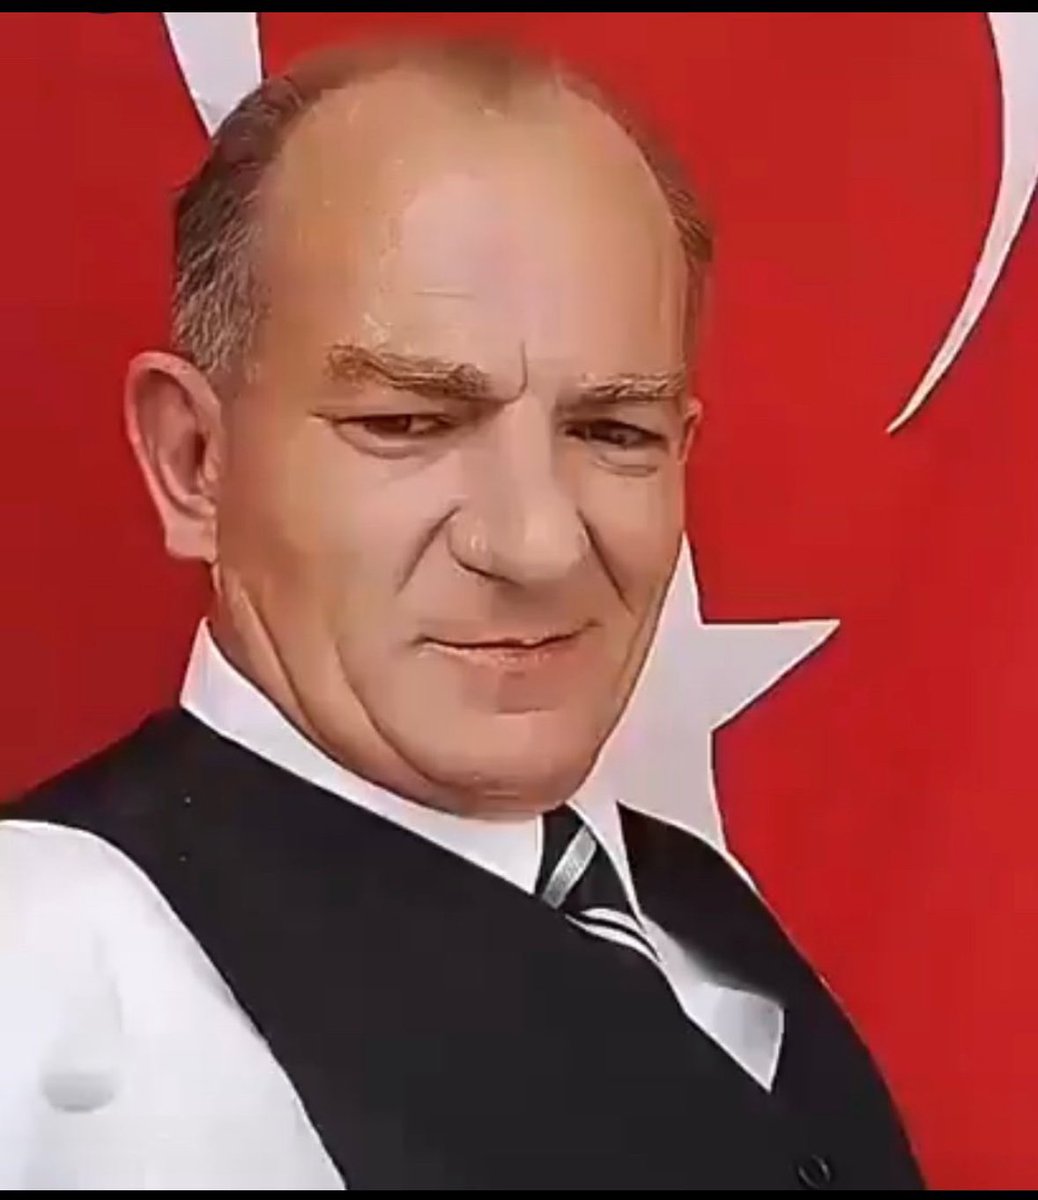 Menzil şeyhini görünce havlayanla,bu herifi Atatürk’e benzetip para yollayan arasında hiçbir fark yoktur.